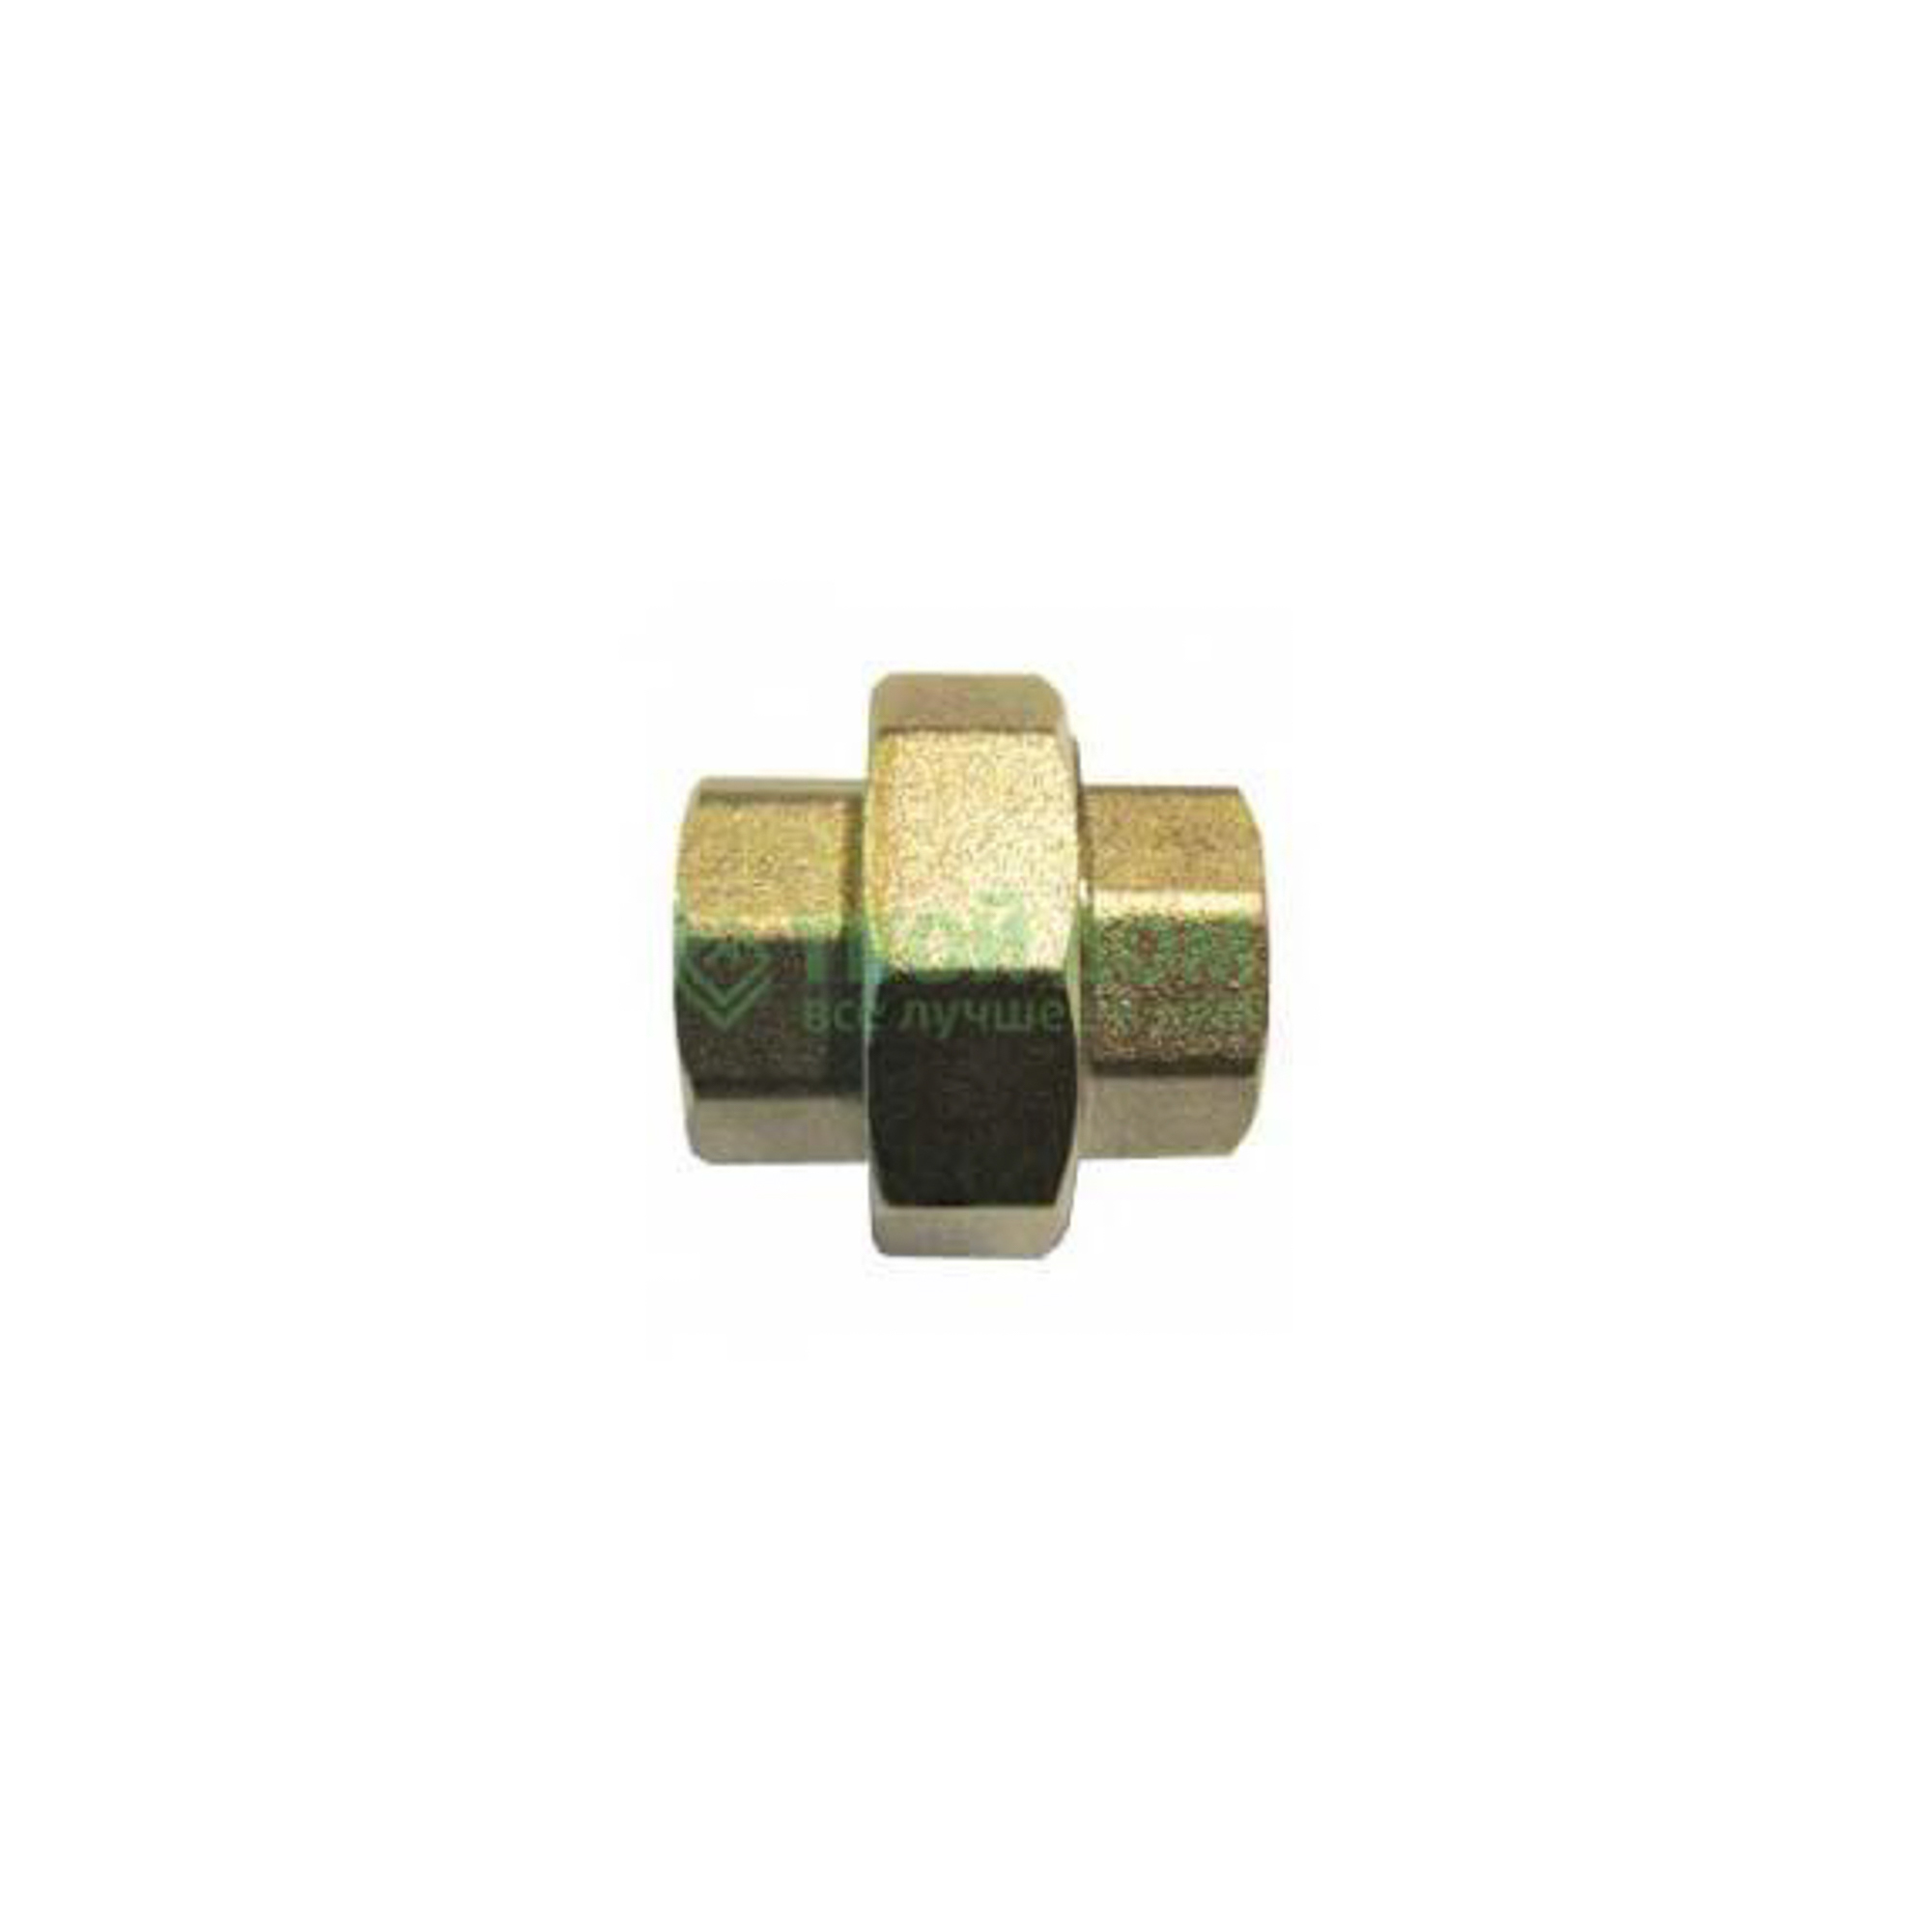 Соединитель Stc латунь ду20 м/м америк5679 (027-5380), цвет бронзовый